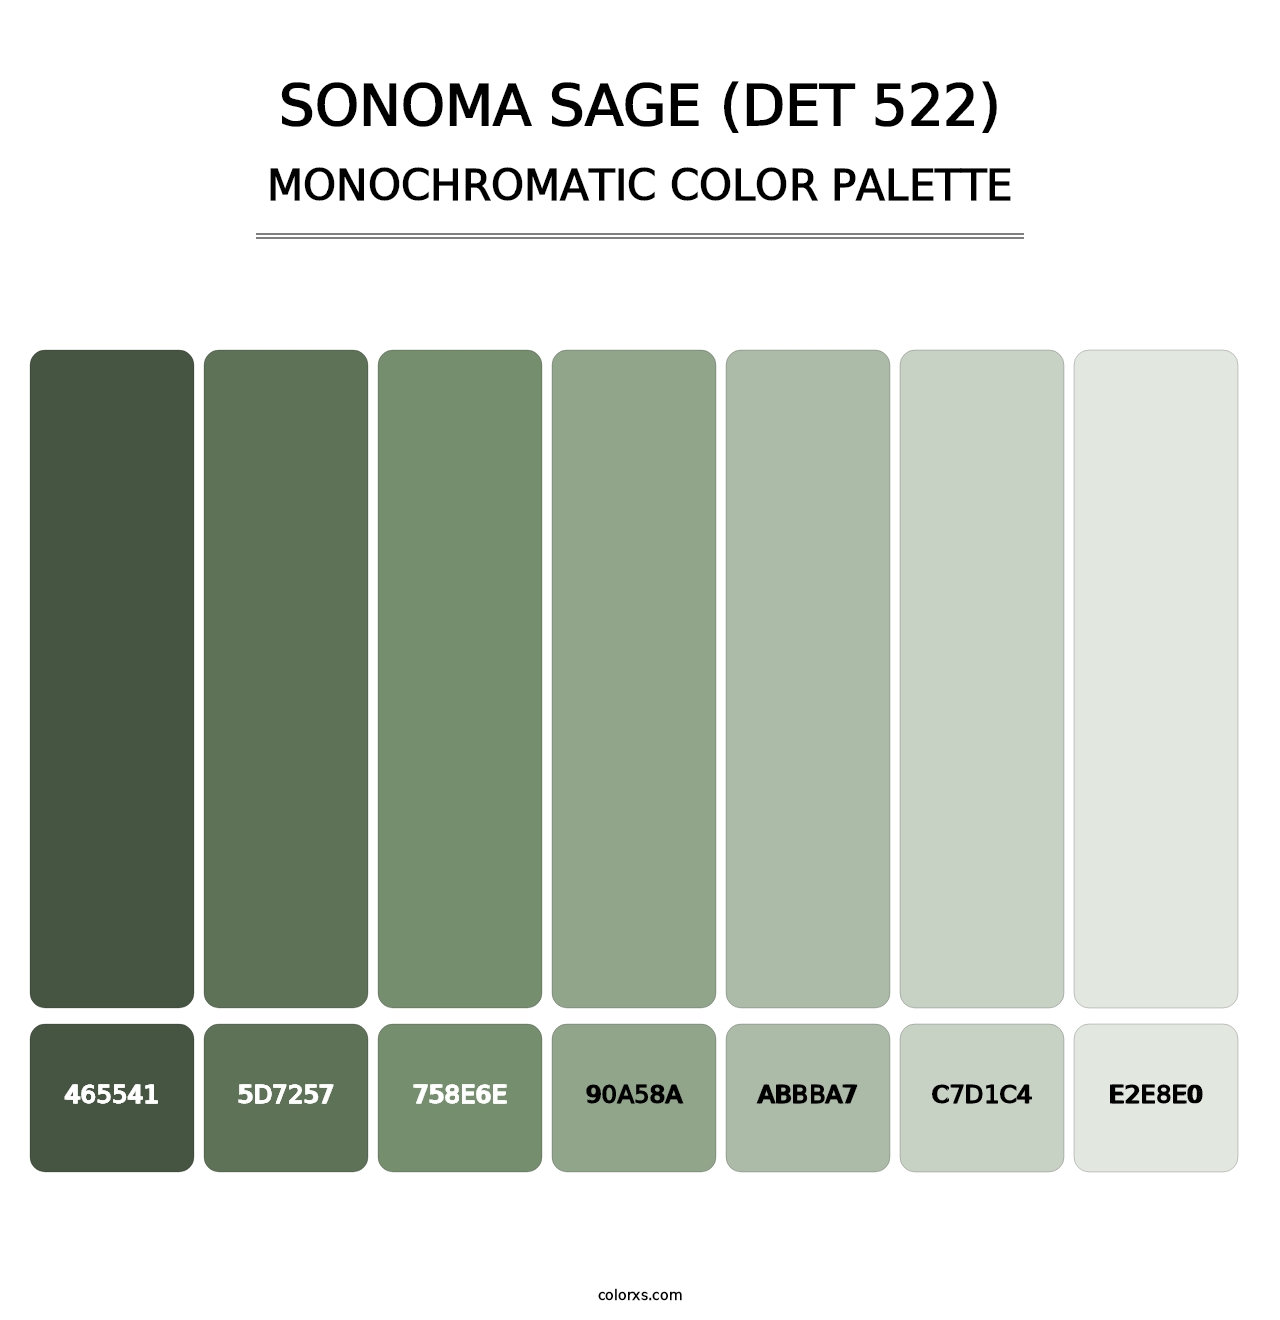 Sonoma Sage (DET 522) - Monochromatic Color Palette